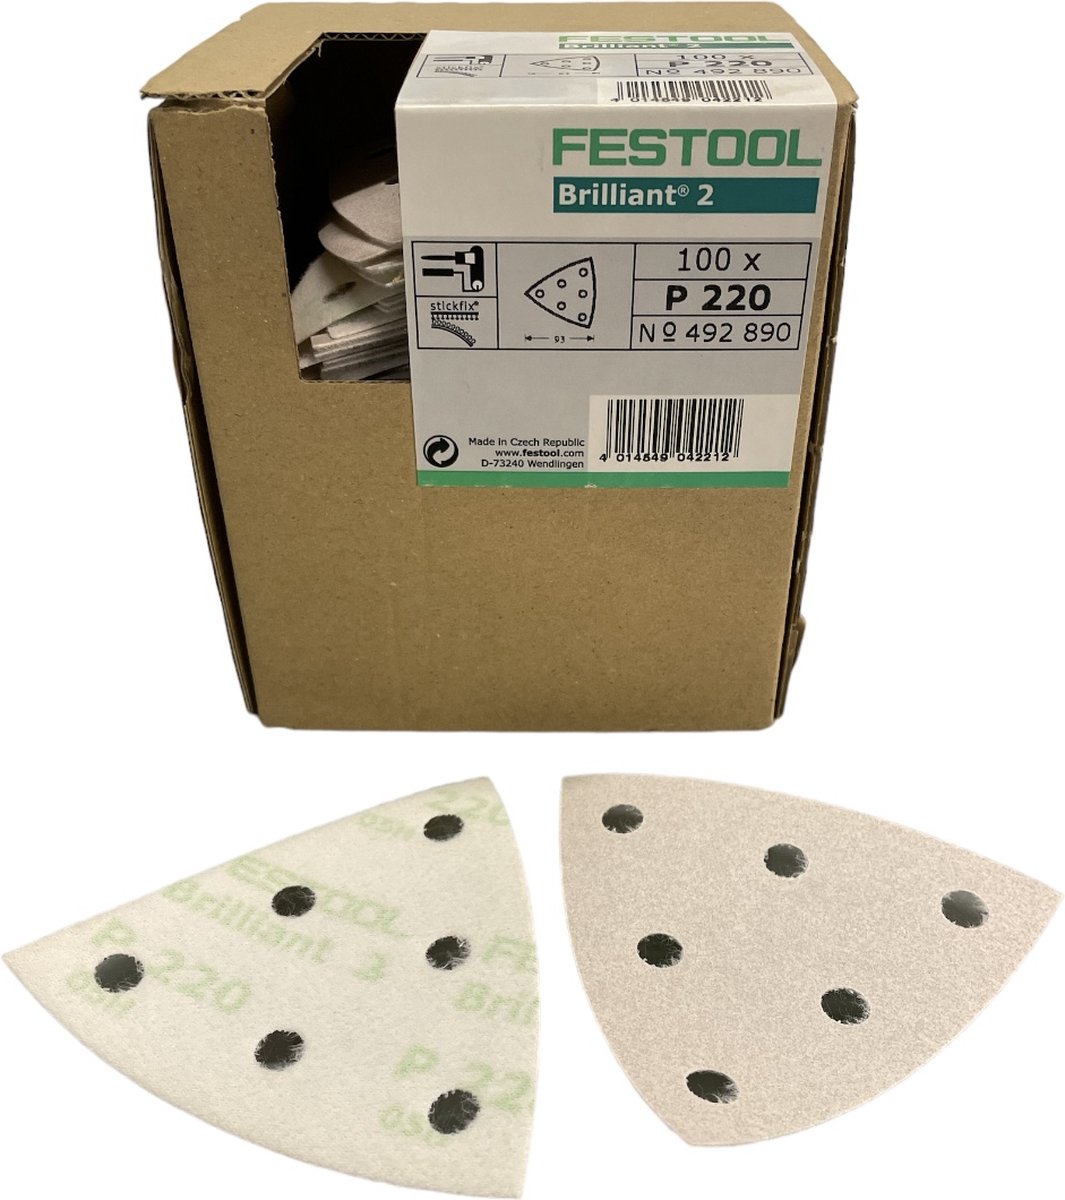 Festool Brilliant 2 schuurpapier 93V art. 492890 - P220 - Prijs per doos ( inhoud 100 stuks)